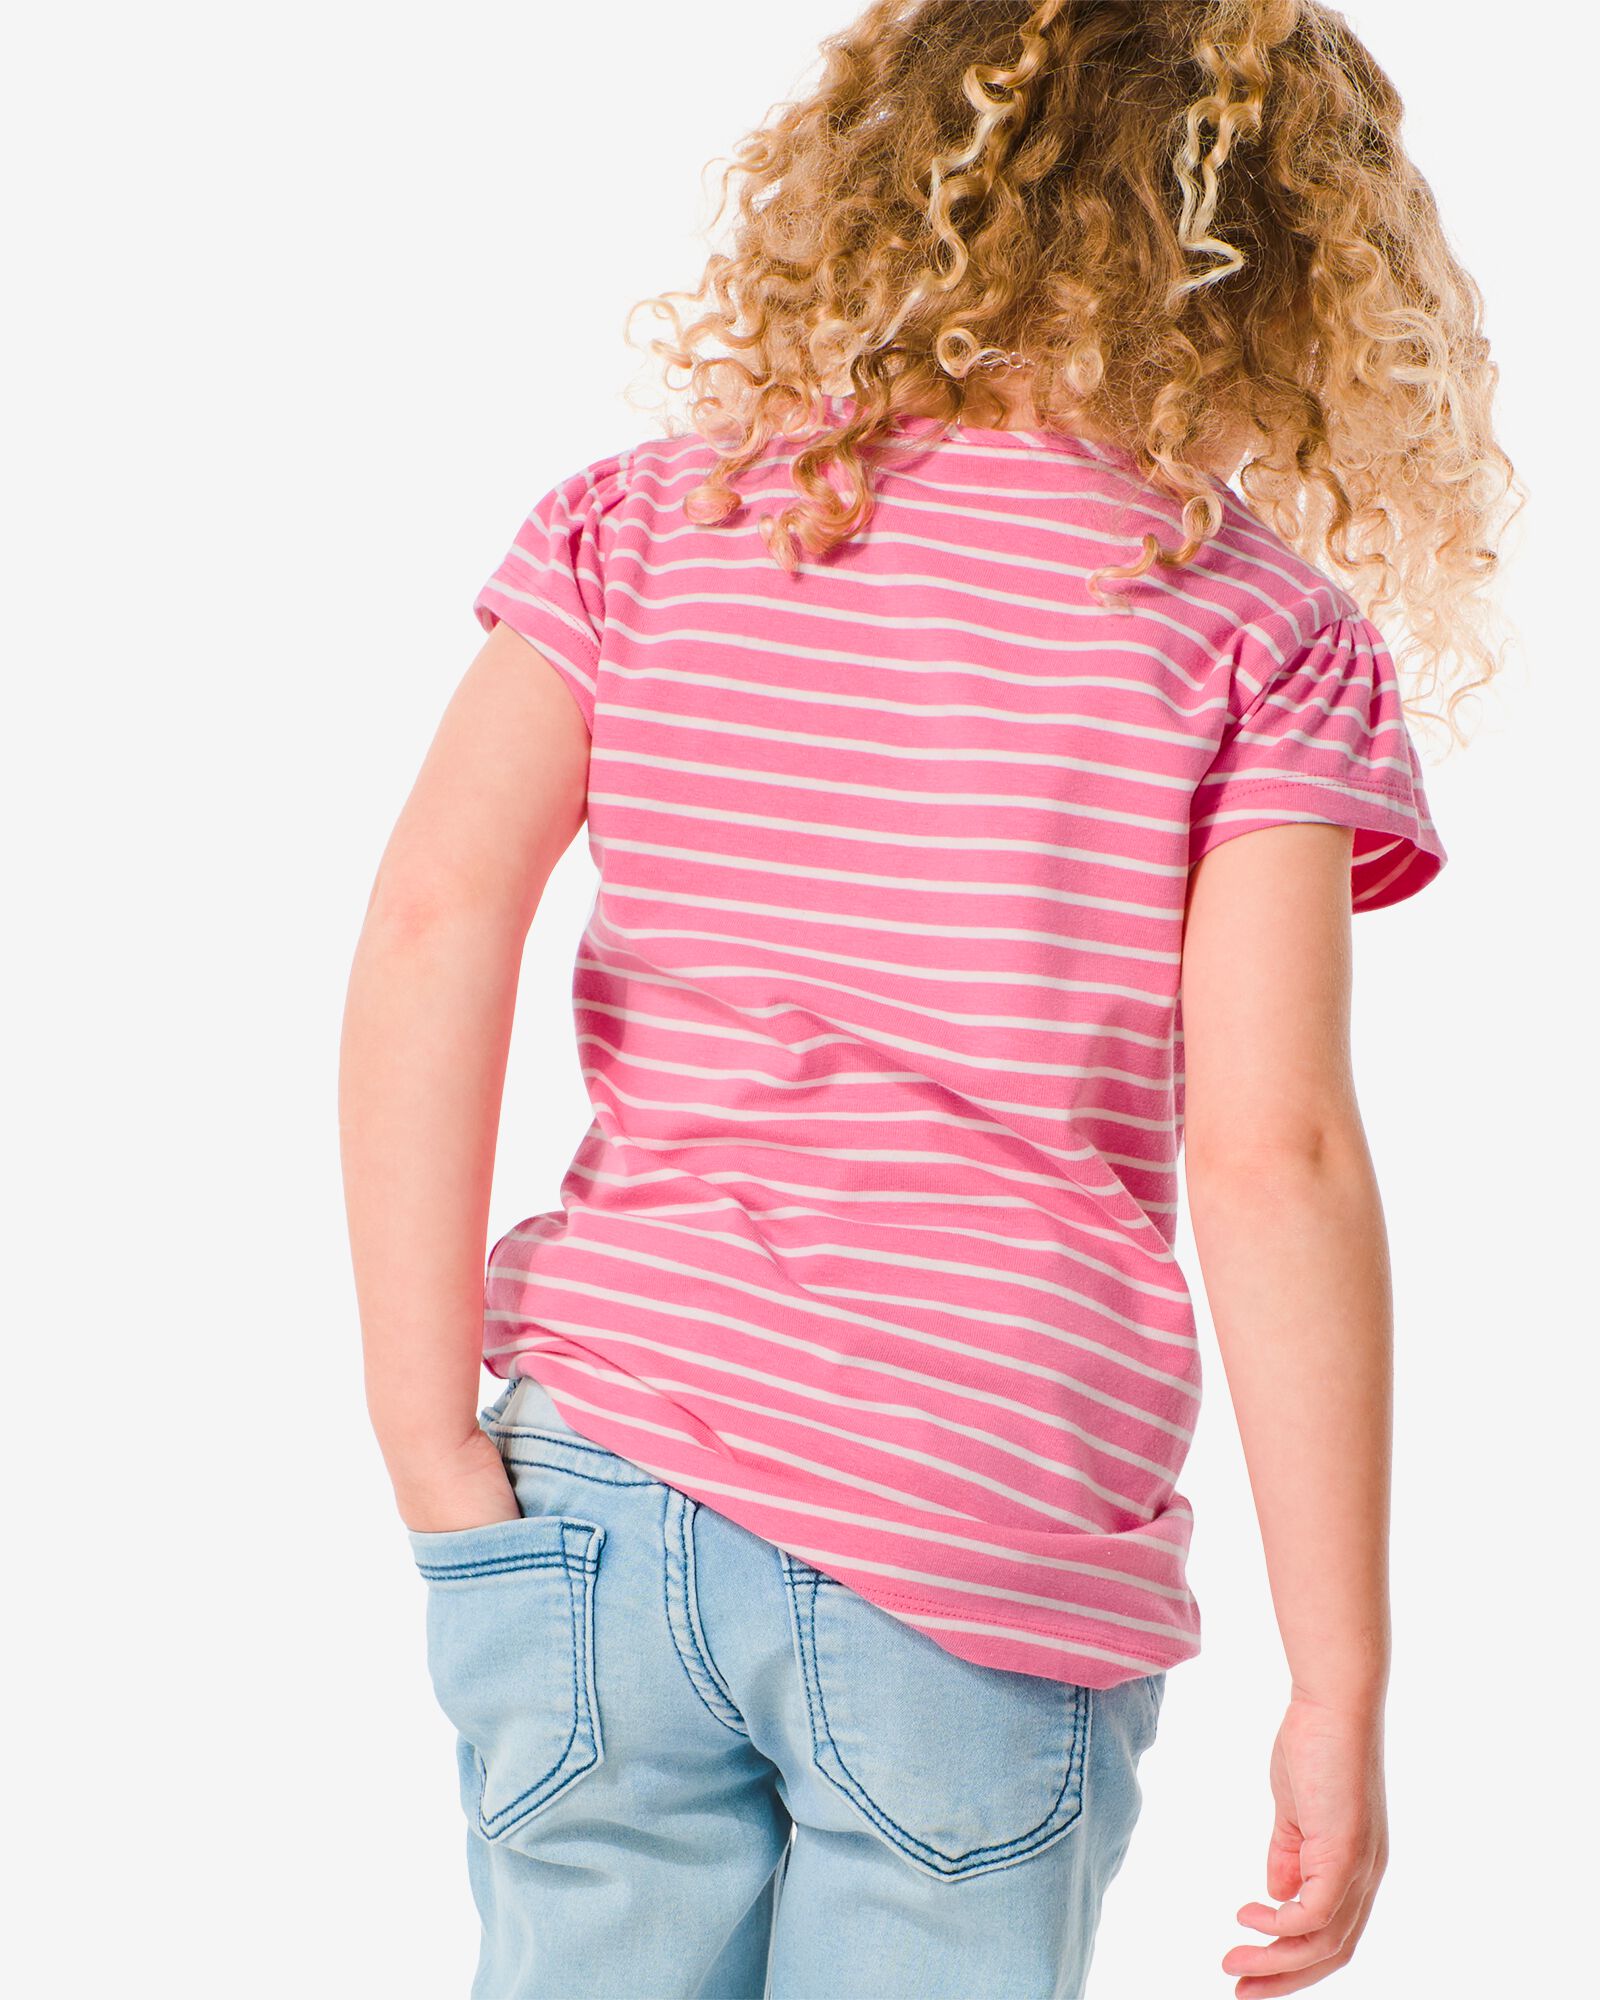 kinder t-shirt met strepen roze 134/140 - 30896968 - HEMA